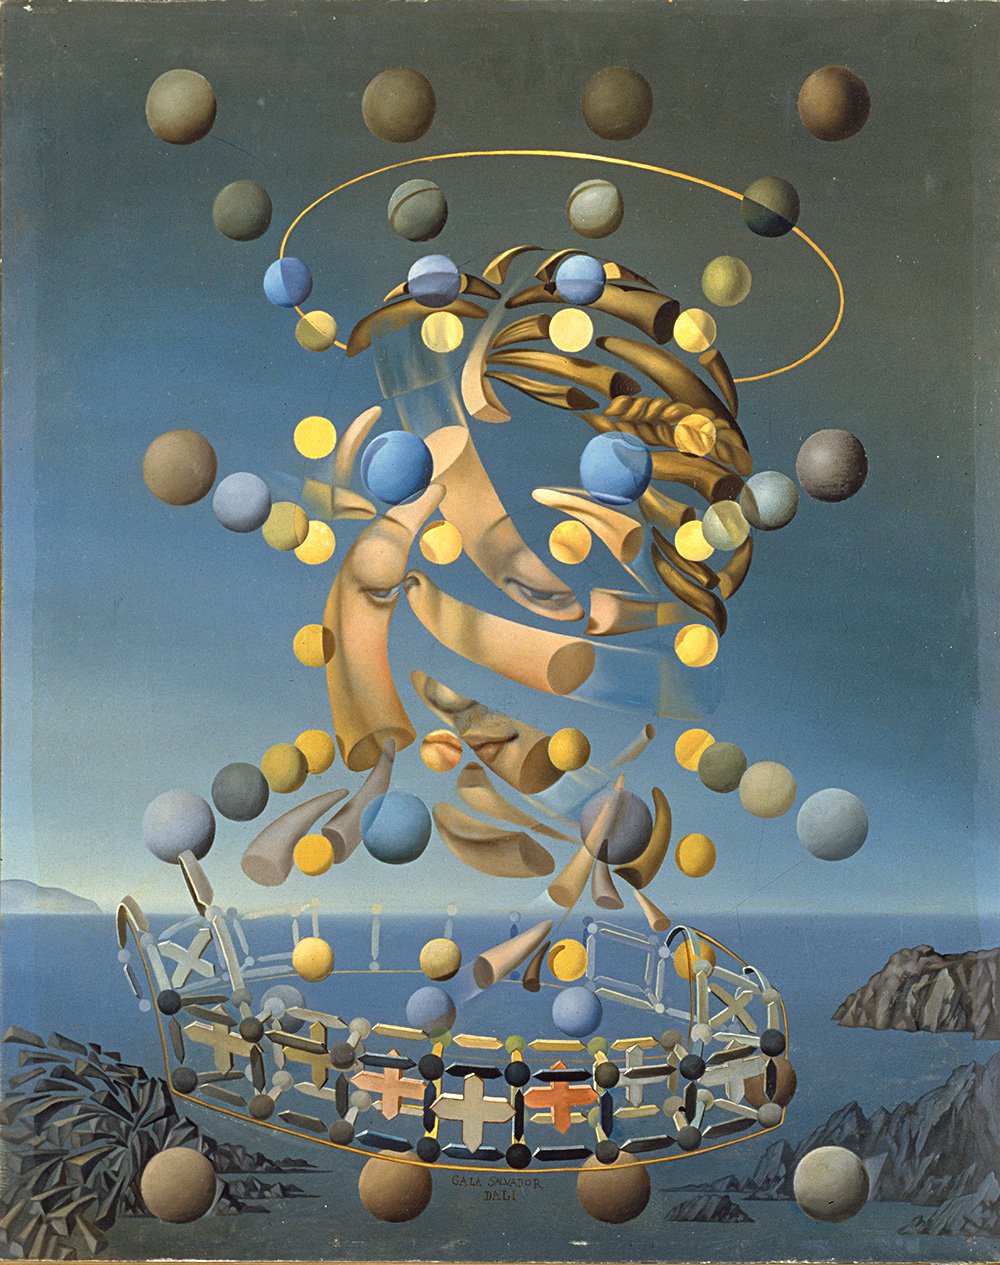 Сальвадор Дали. «Максимальная скорость „Мадонны“ Рафаэля». 1954. Фото: © Salvador Dalí, Fundació Gala-Salvador Dalí, UPRAVIS, Moscow, 2019